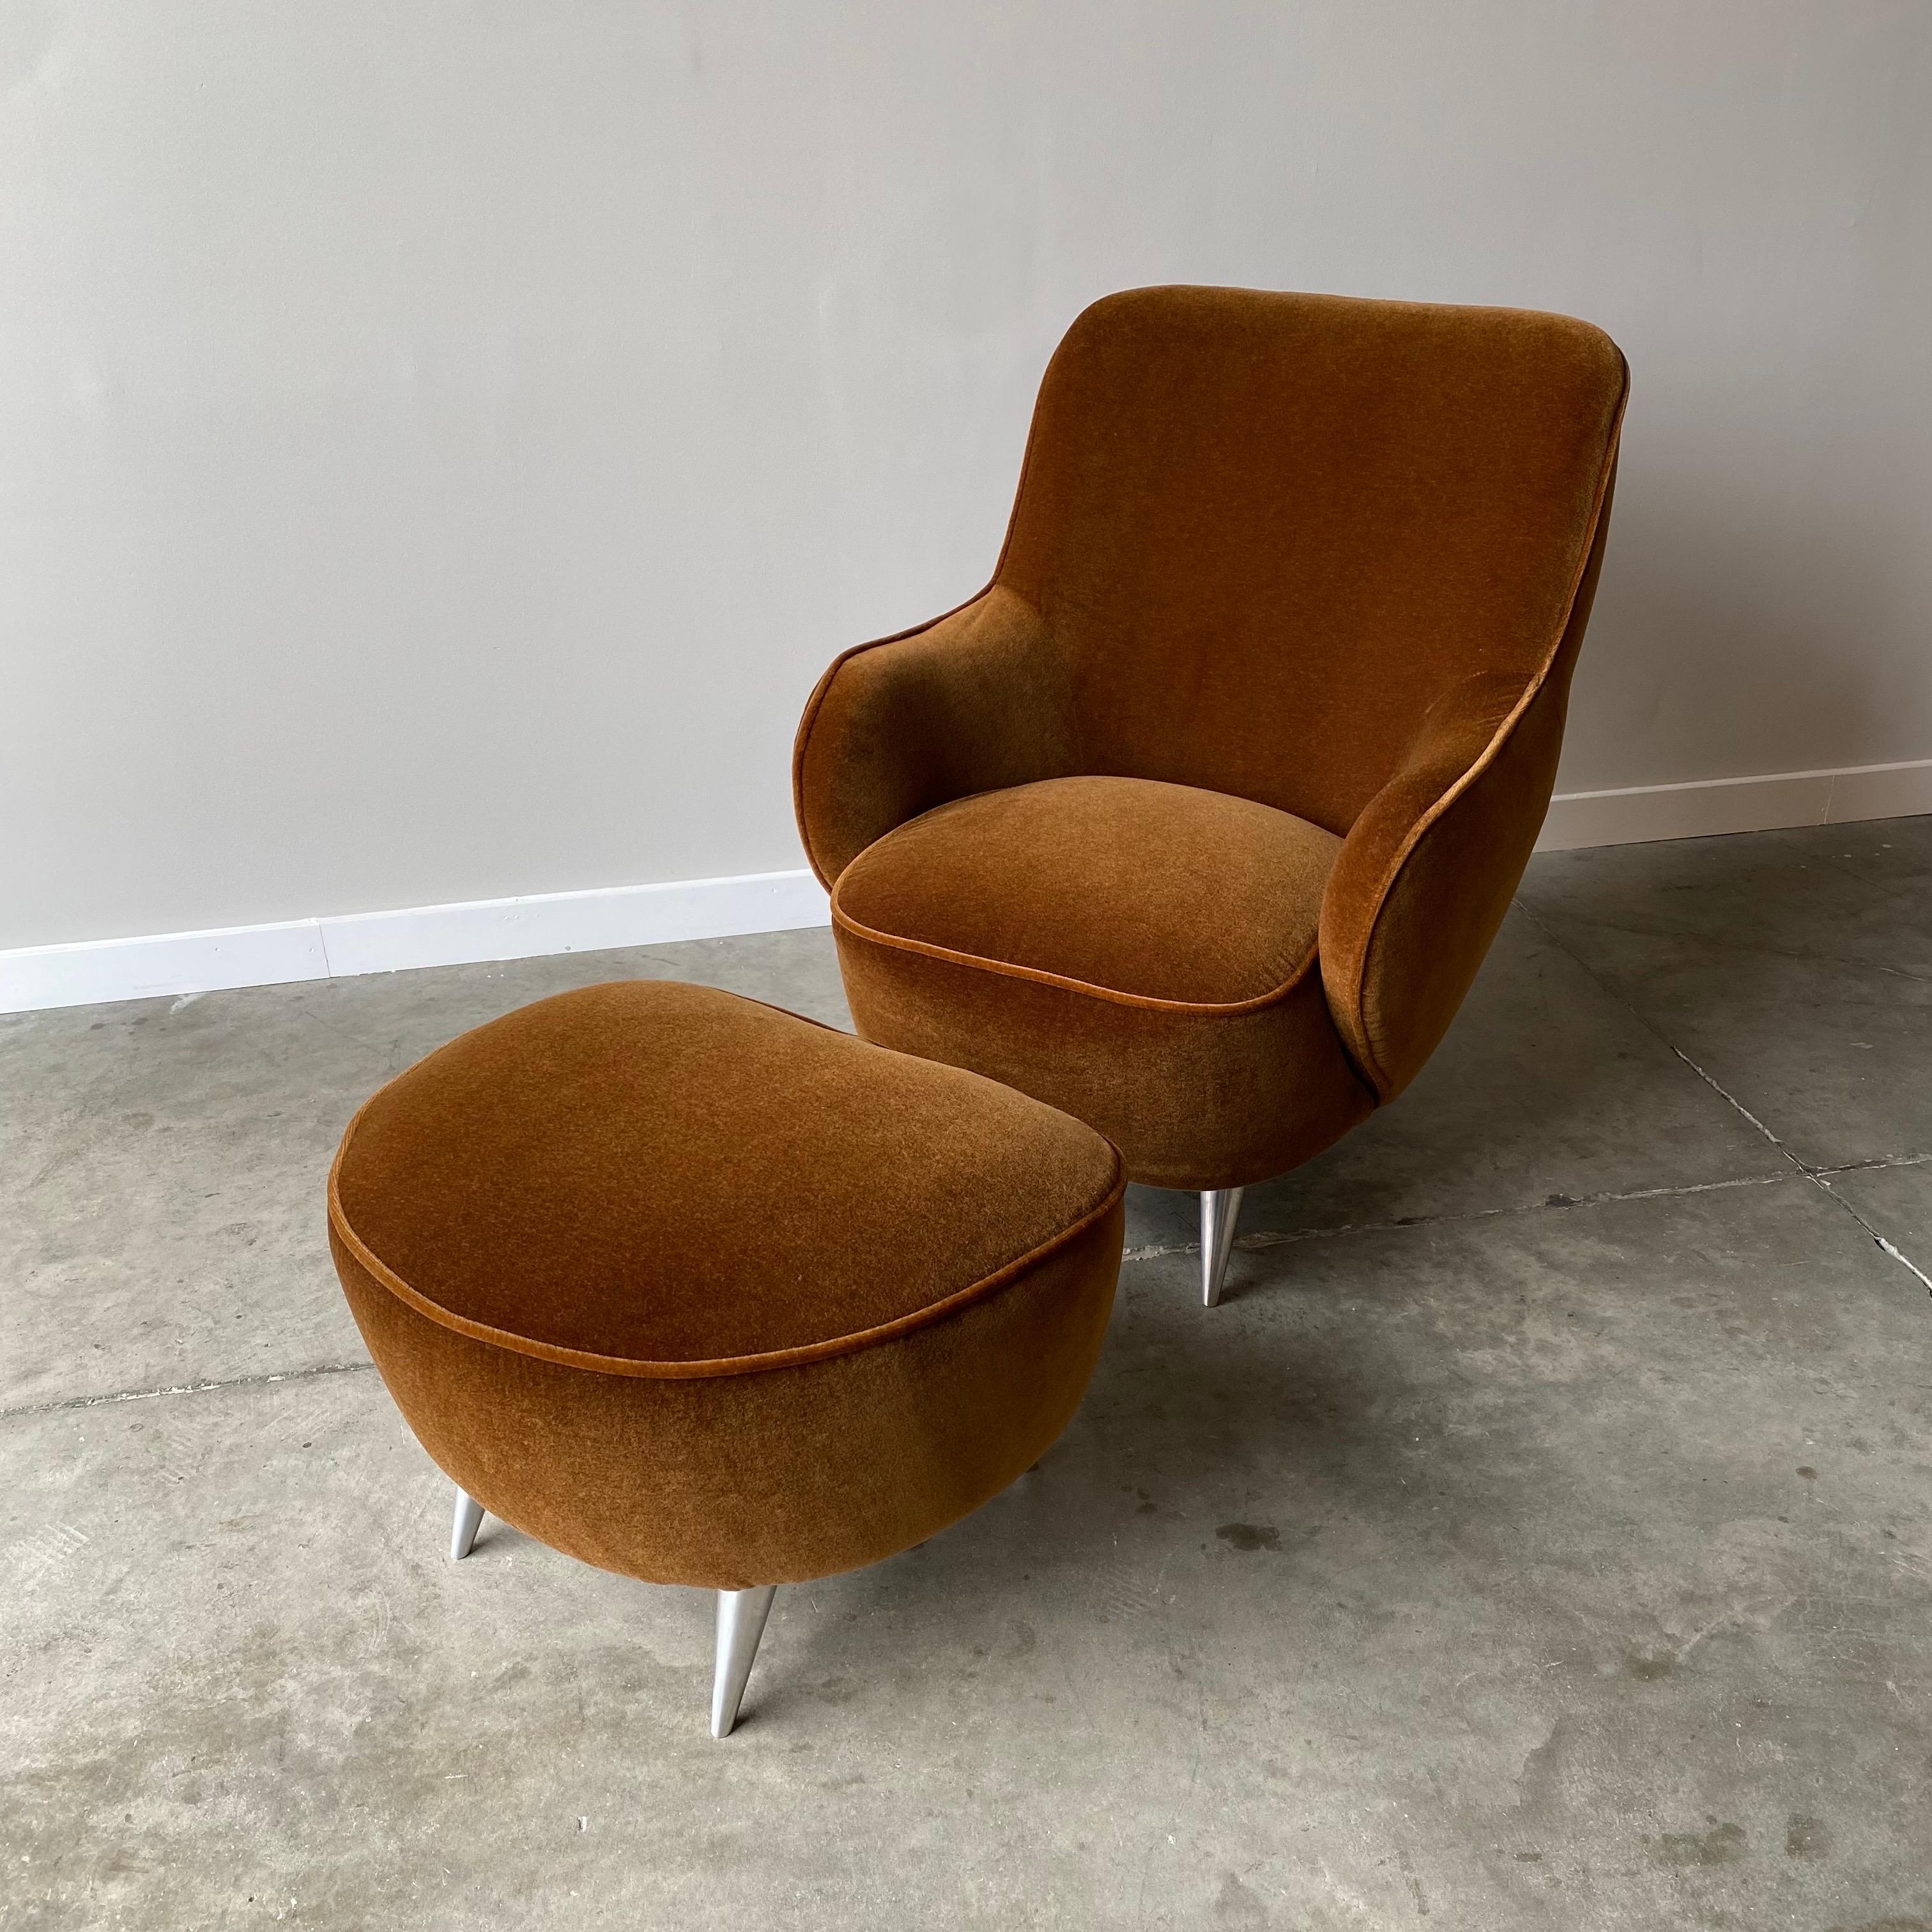 Un ensemble remarquable de la Collection New York de Vladimir Kagan.  
Nouvellement revêtu d'un superbe mohair marron aux nuances cuivrées, pieds en aluminium brossé.


La chaise mesure 36